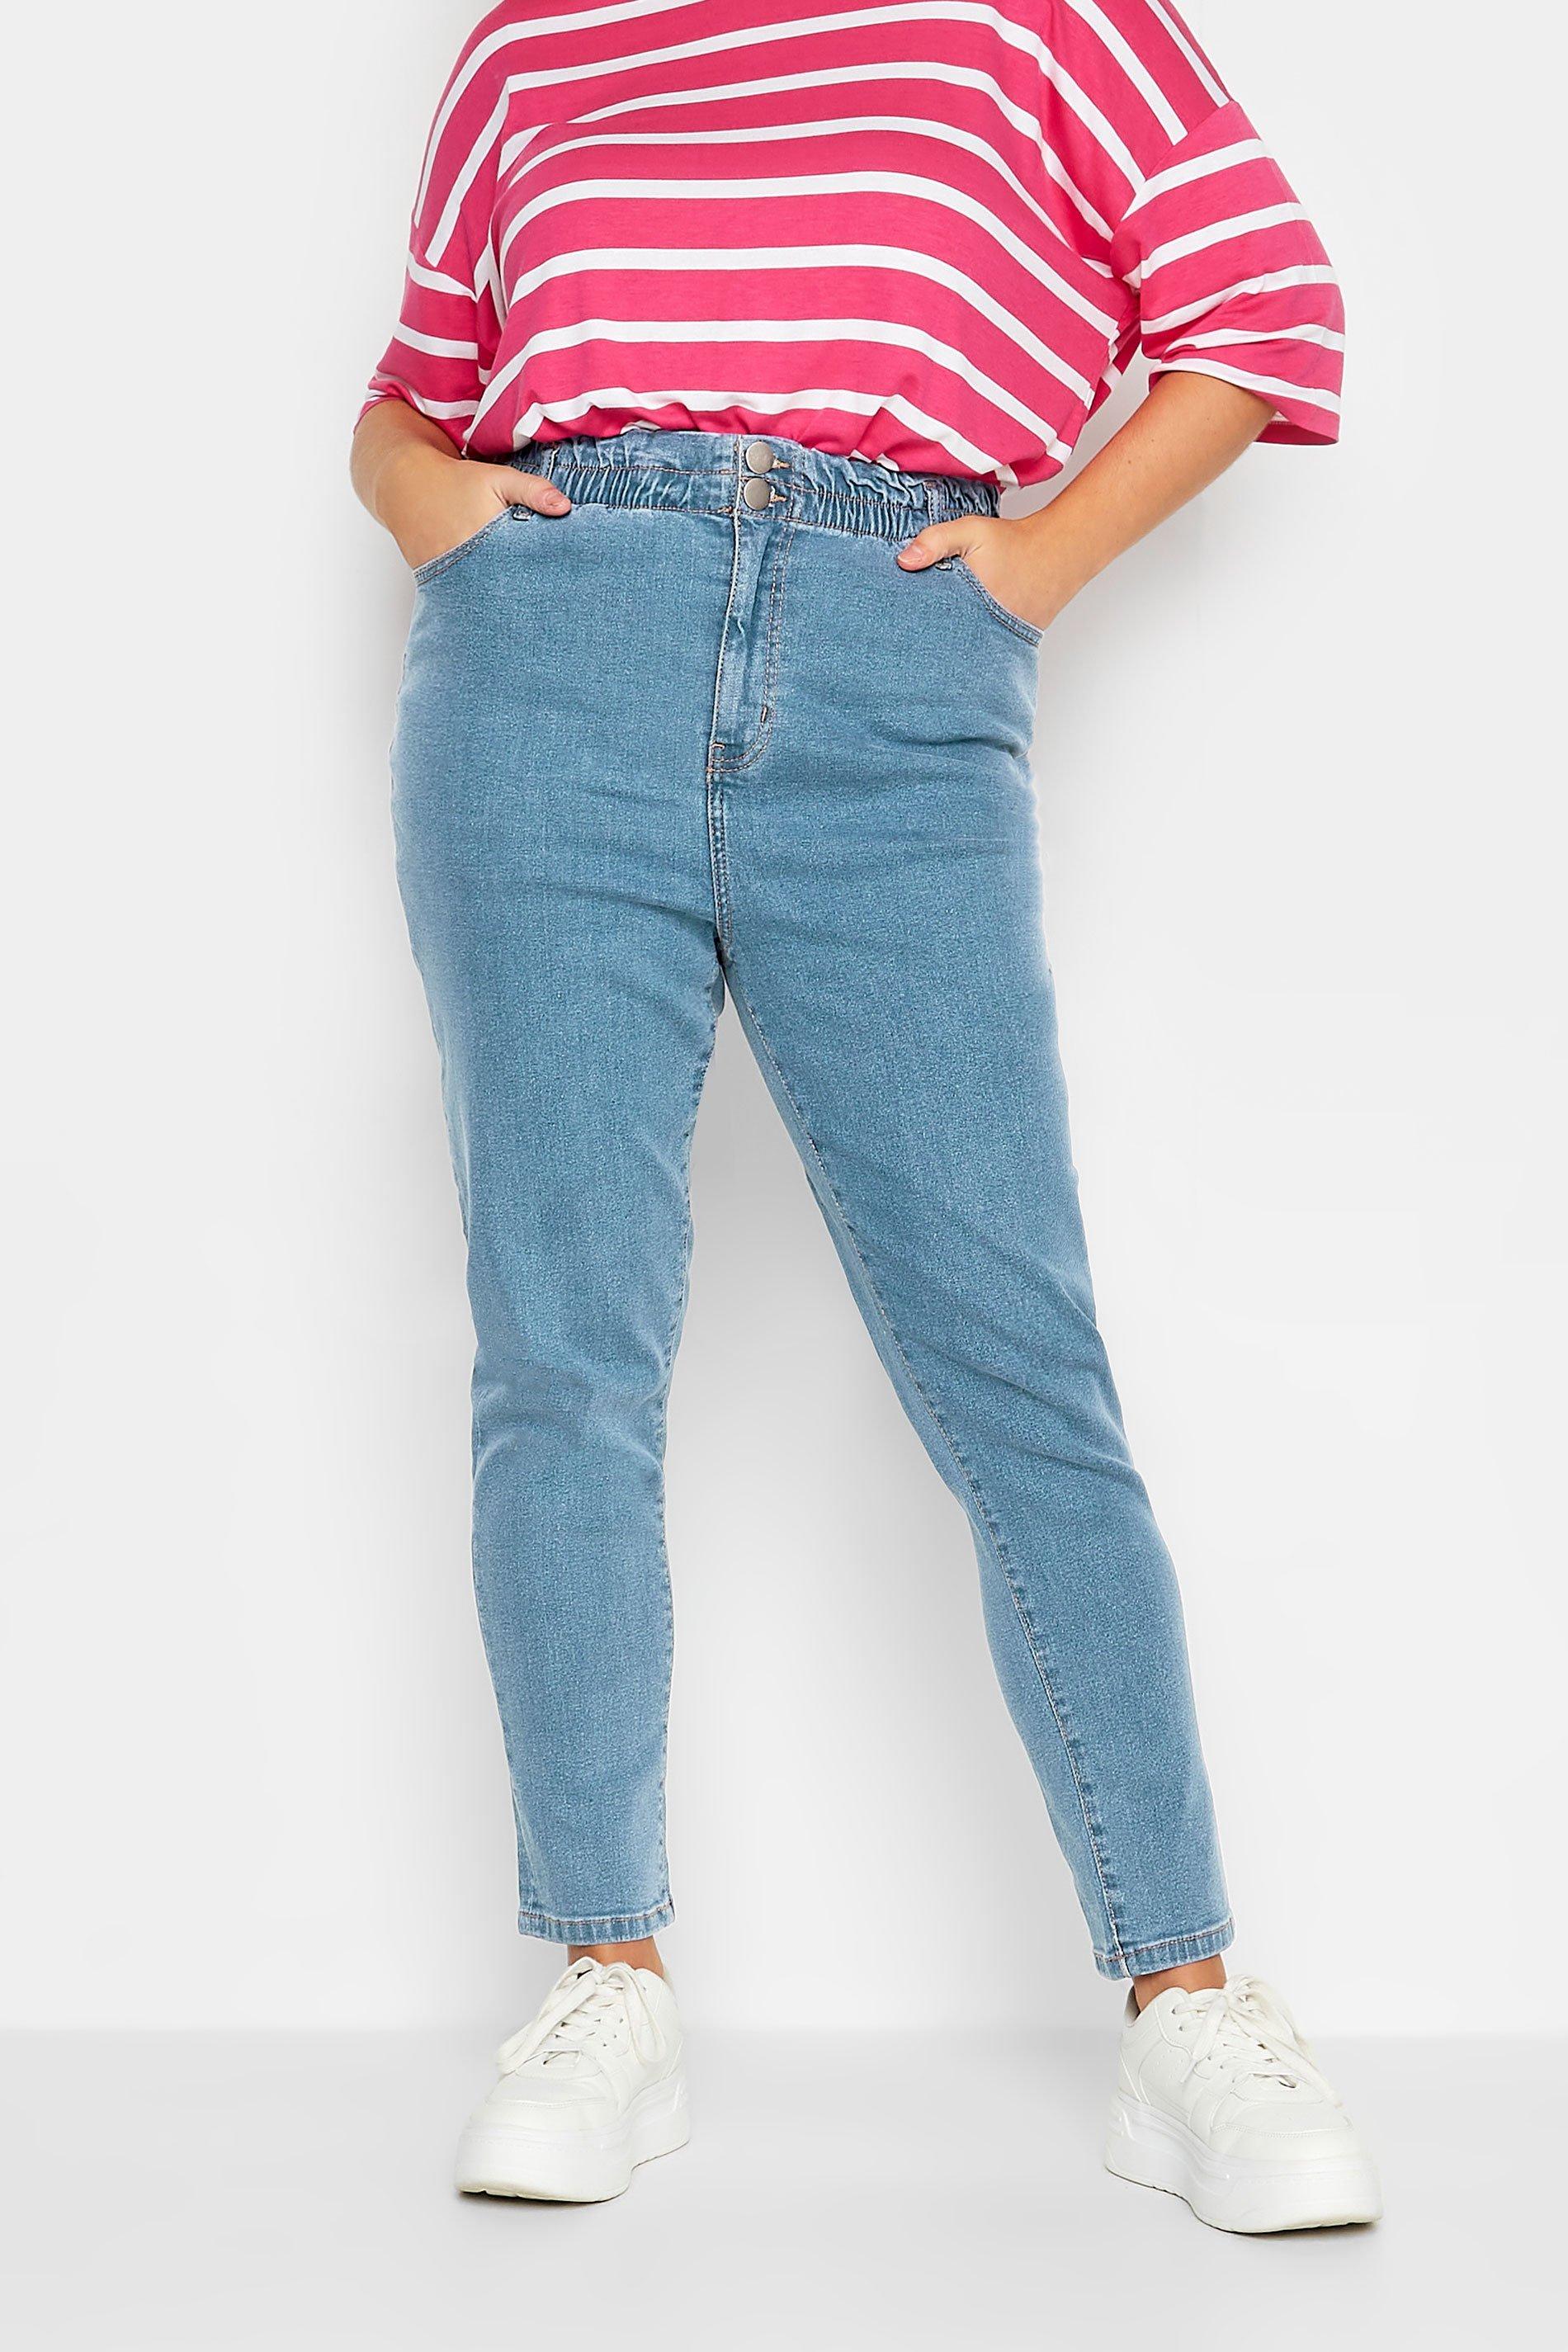 Plus Size Jeans & Denim